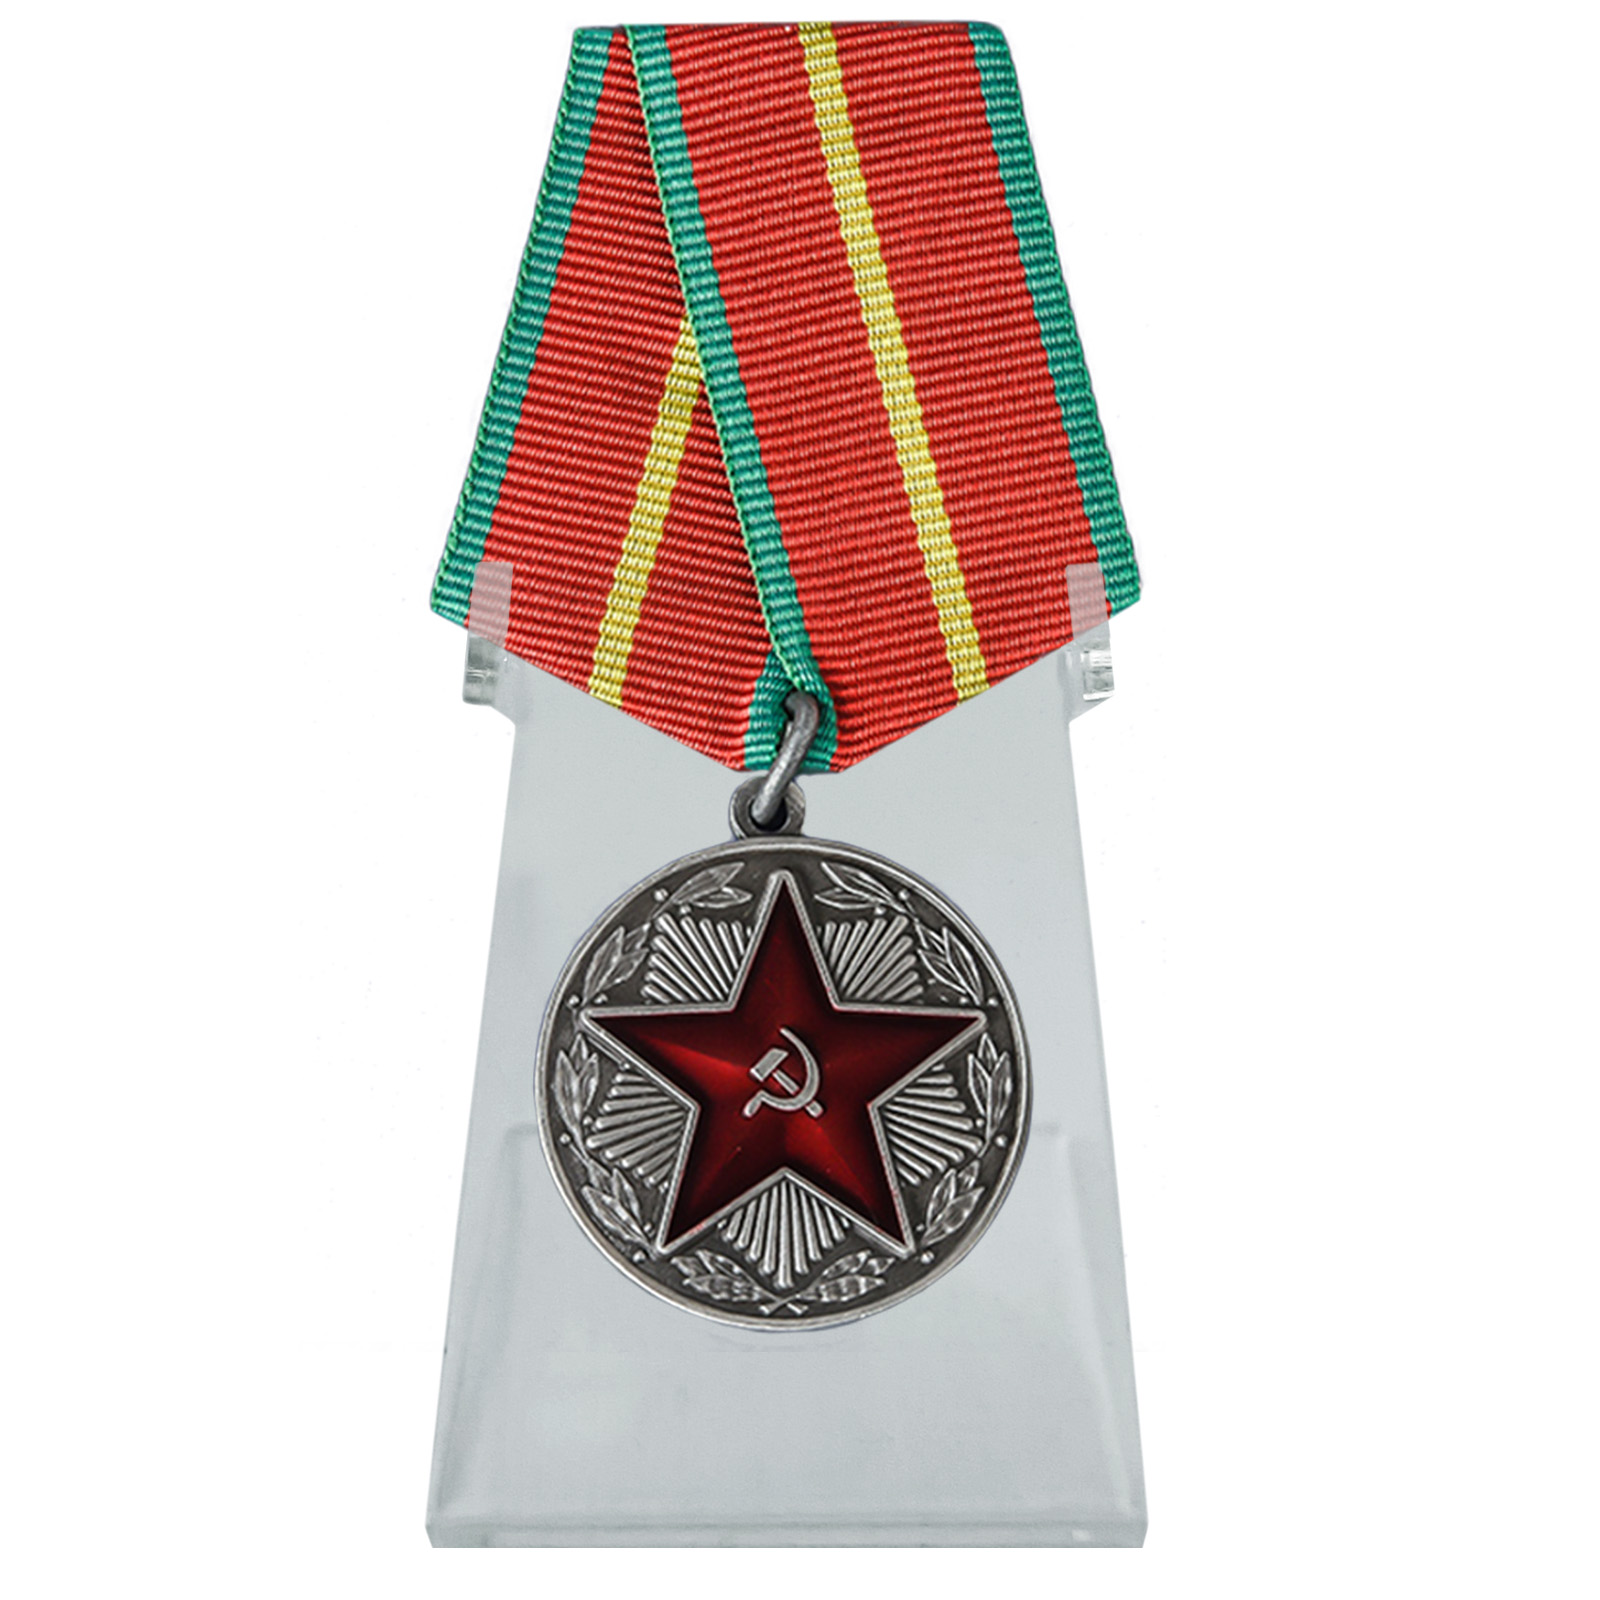 Медаль "За безупречную службу" в ВВ МВД СССР на подставке